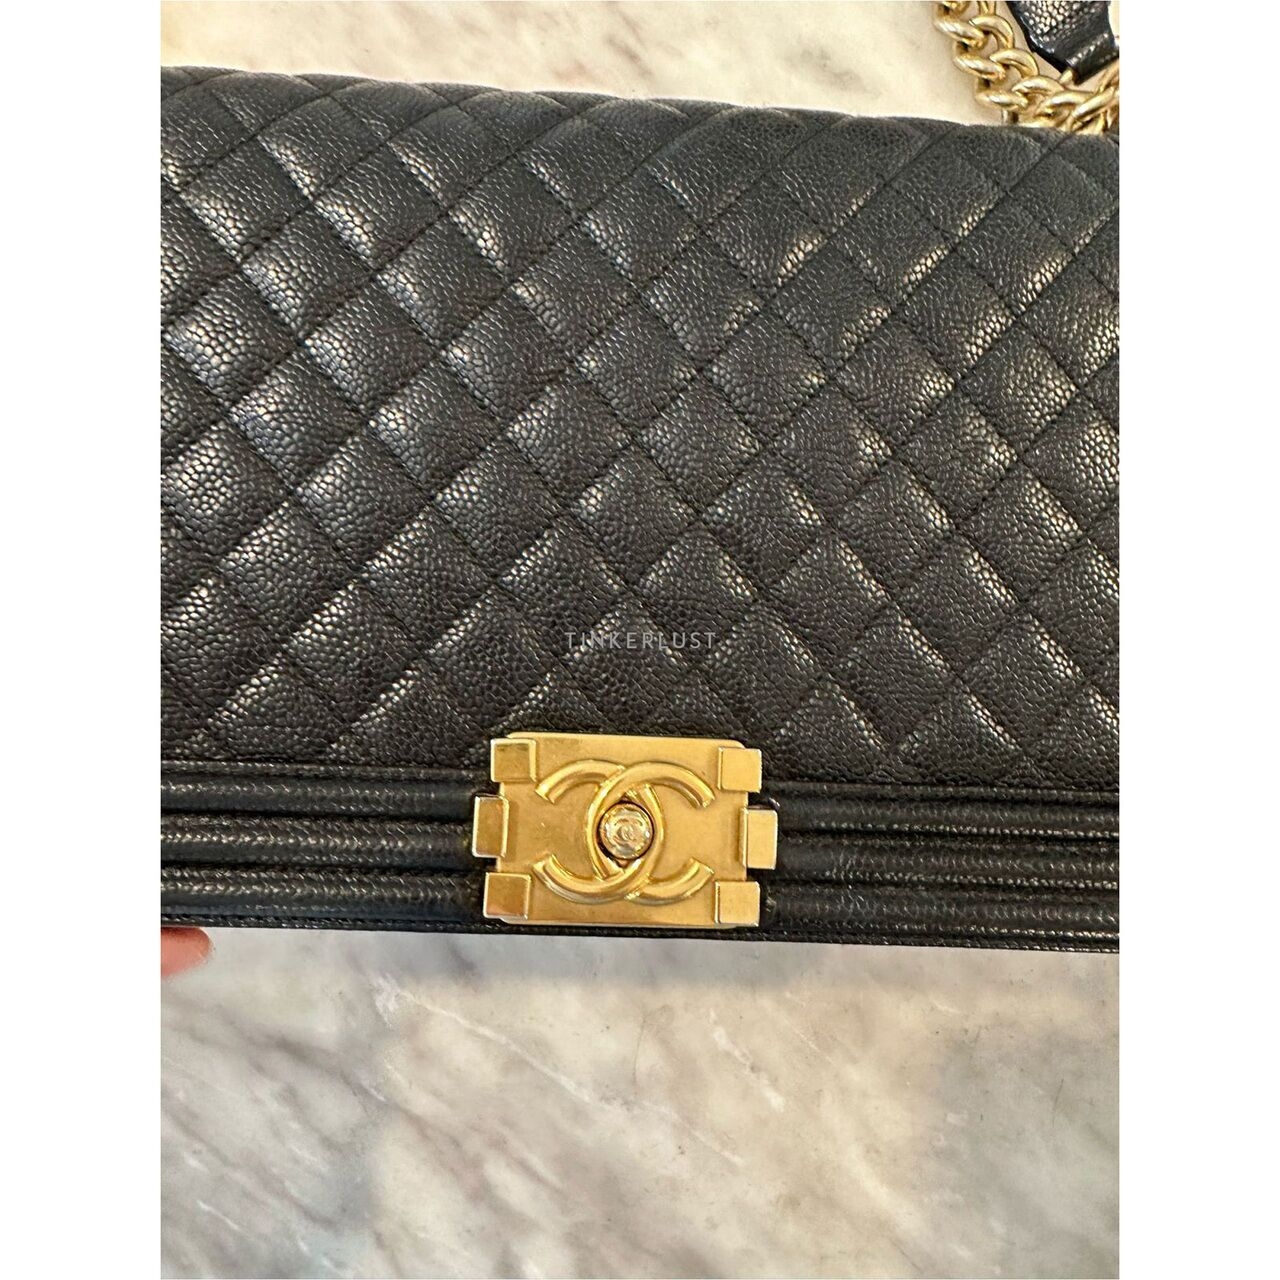 Chanel Boy Medium Black Caviar GHW #28 Shoulder Bag